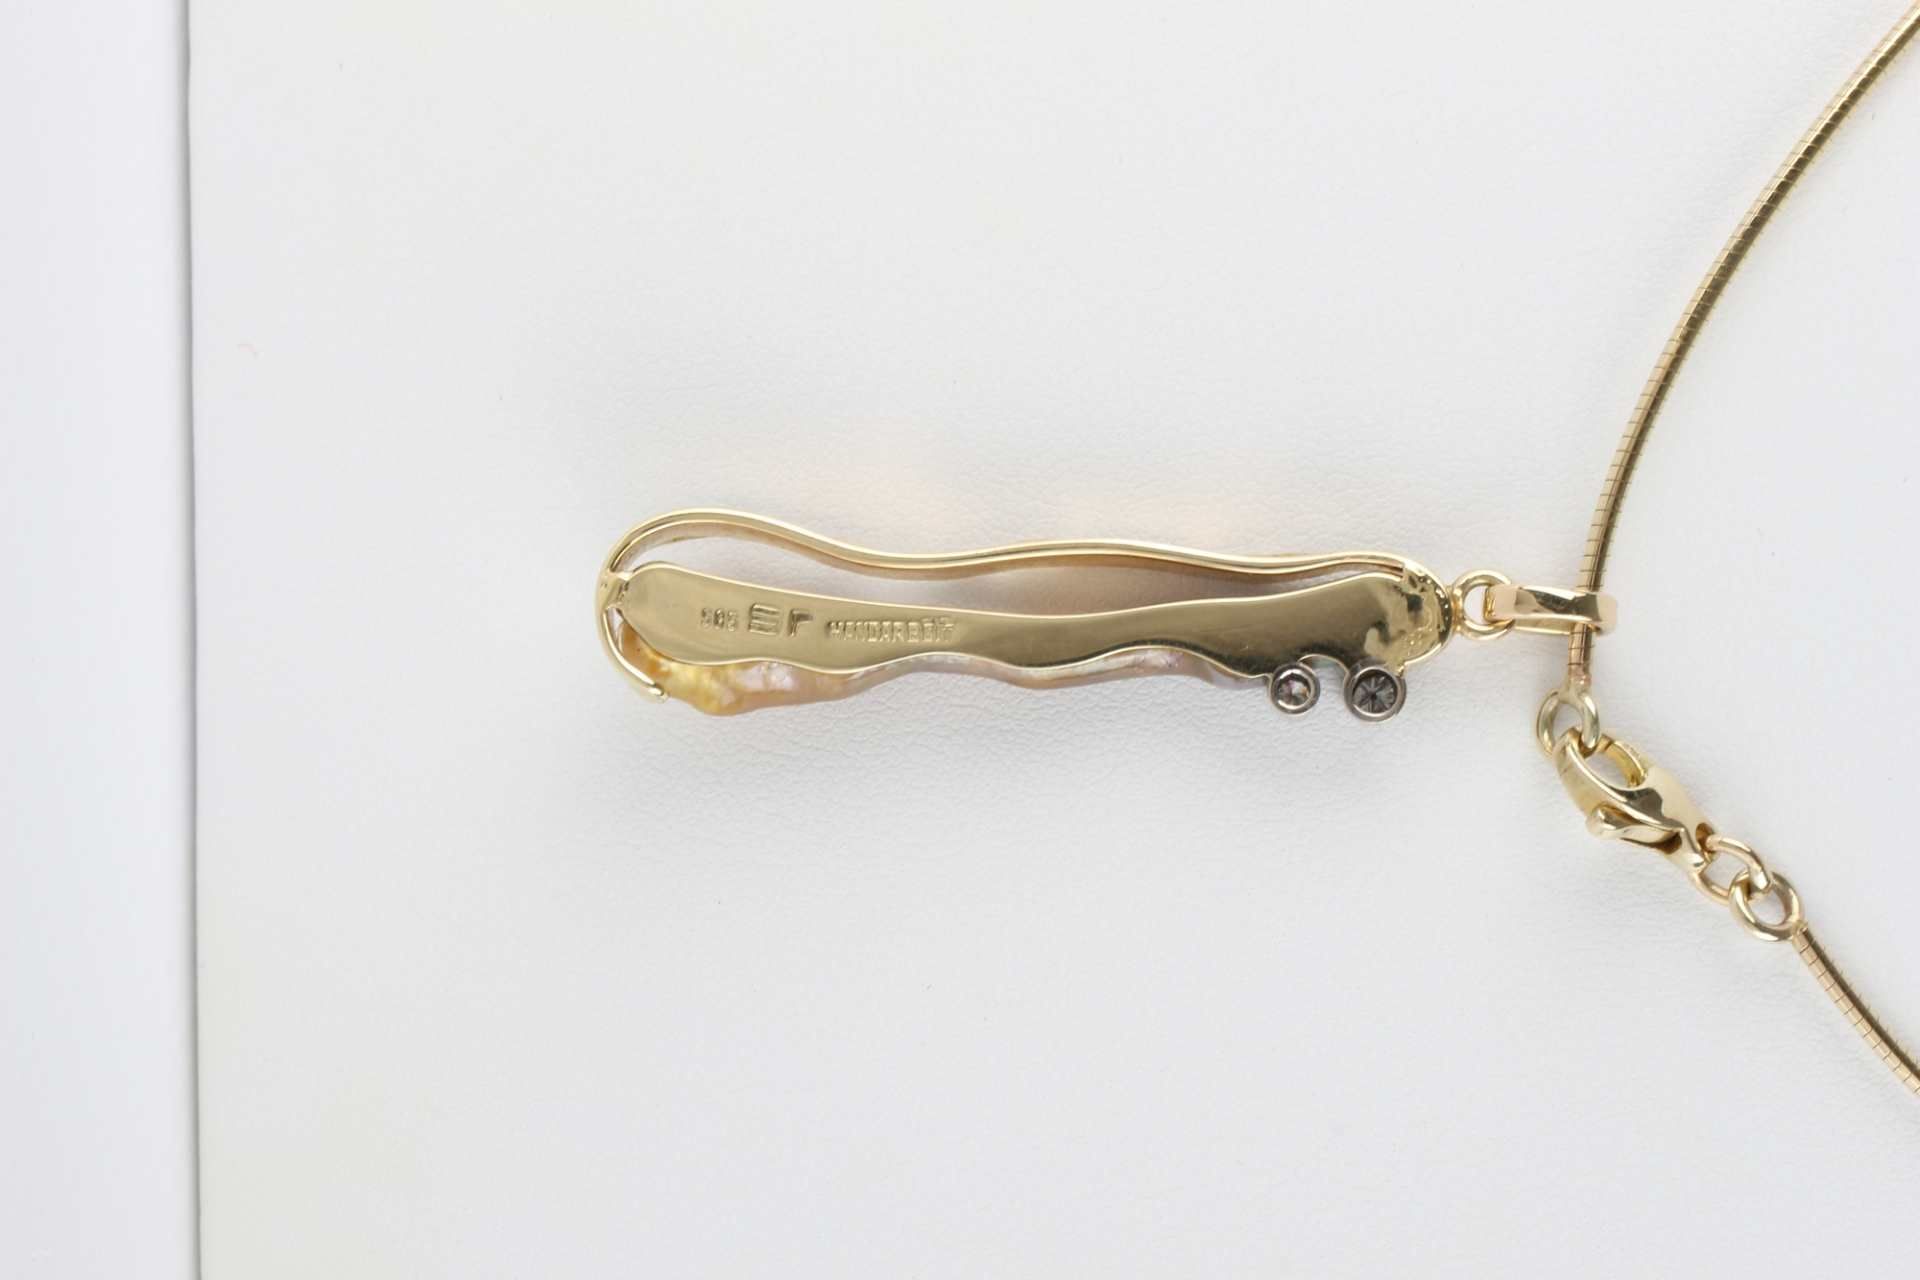 585 Gold Collier, Anhänger Biwa Perle mit zwei Brillanten 0,12 ct an Goldkette, gold necklace, - Image 5 of 5